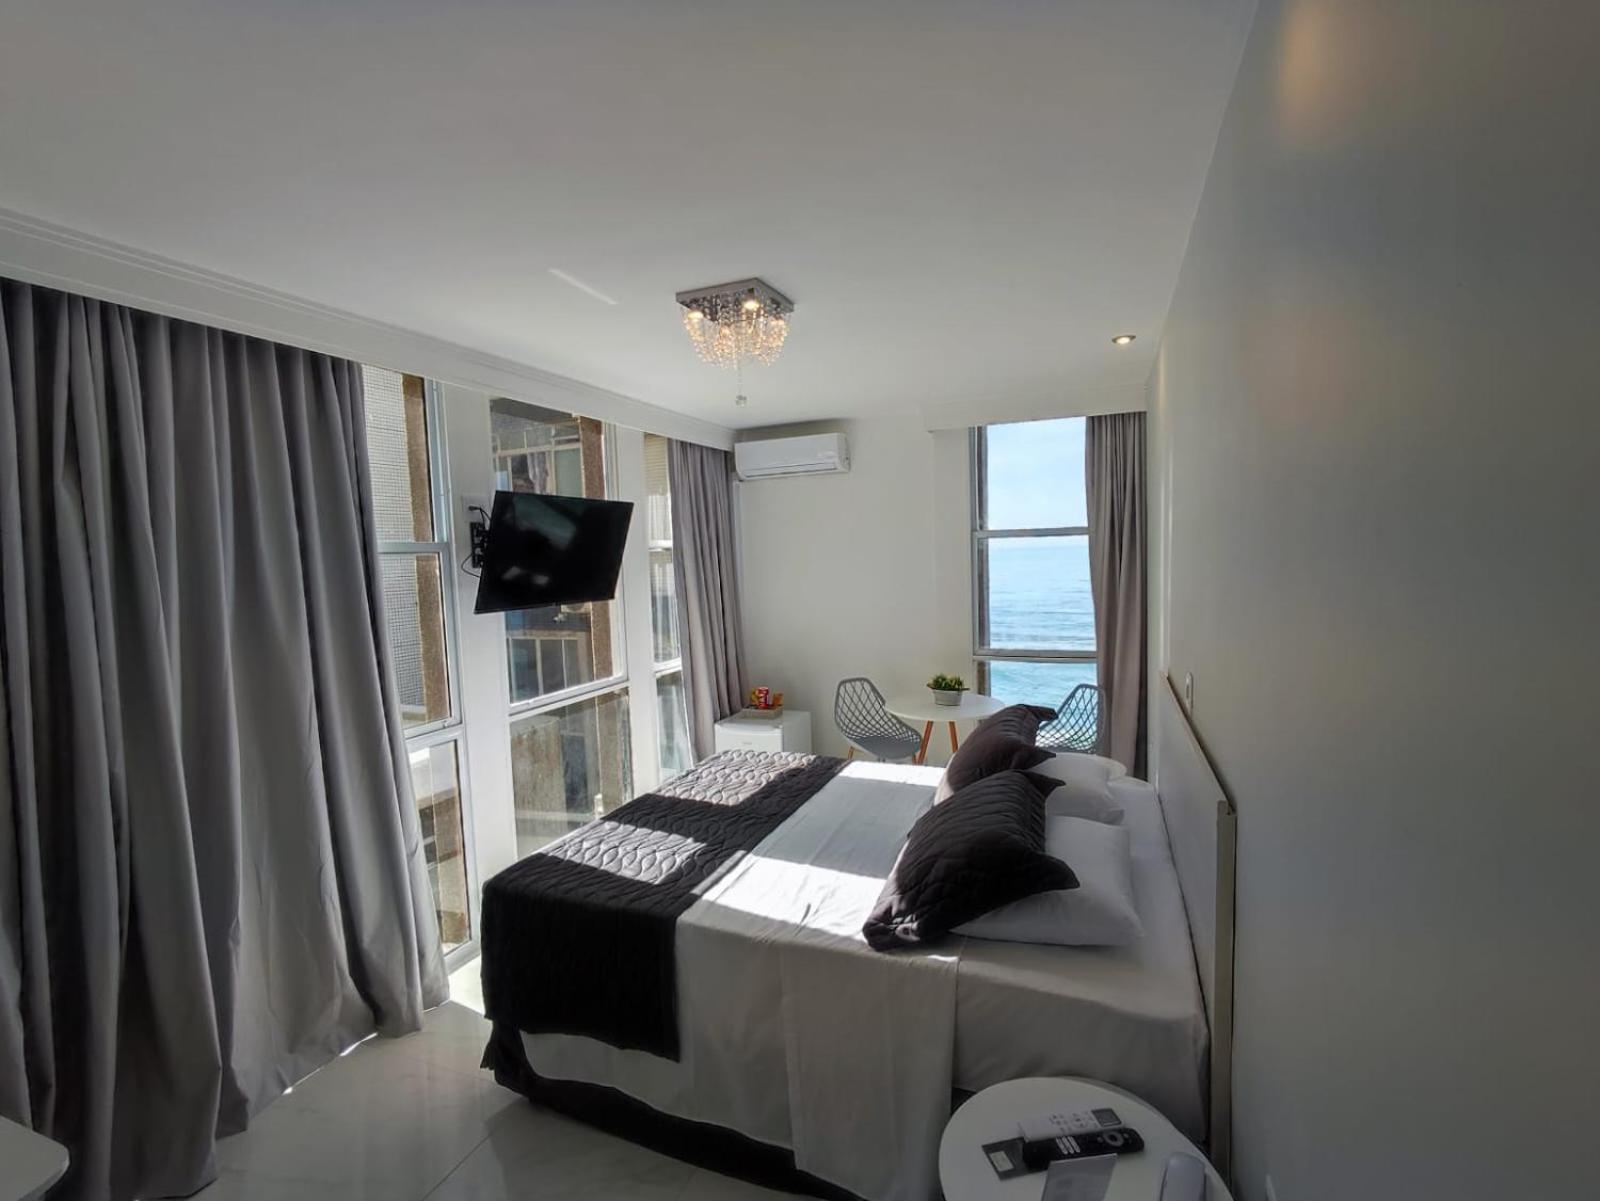 Grand Hotel Guaruja - A Sua Melhor Experiencia Beira Mar Na Praia! Exterior photo